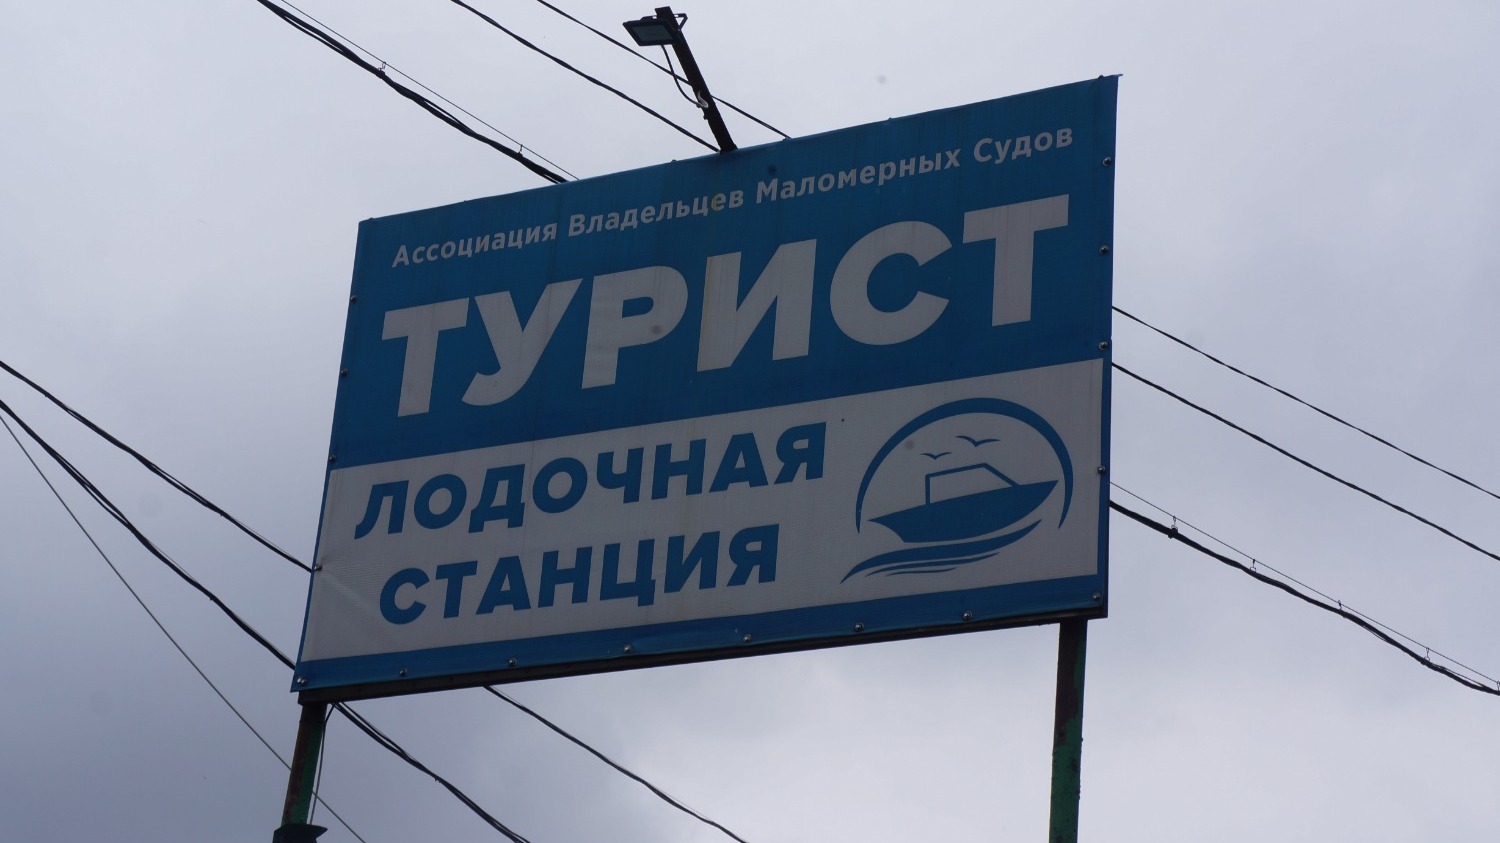 Нижегородское минимущества готово к диалогу по лодочной станции «Турист»